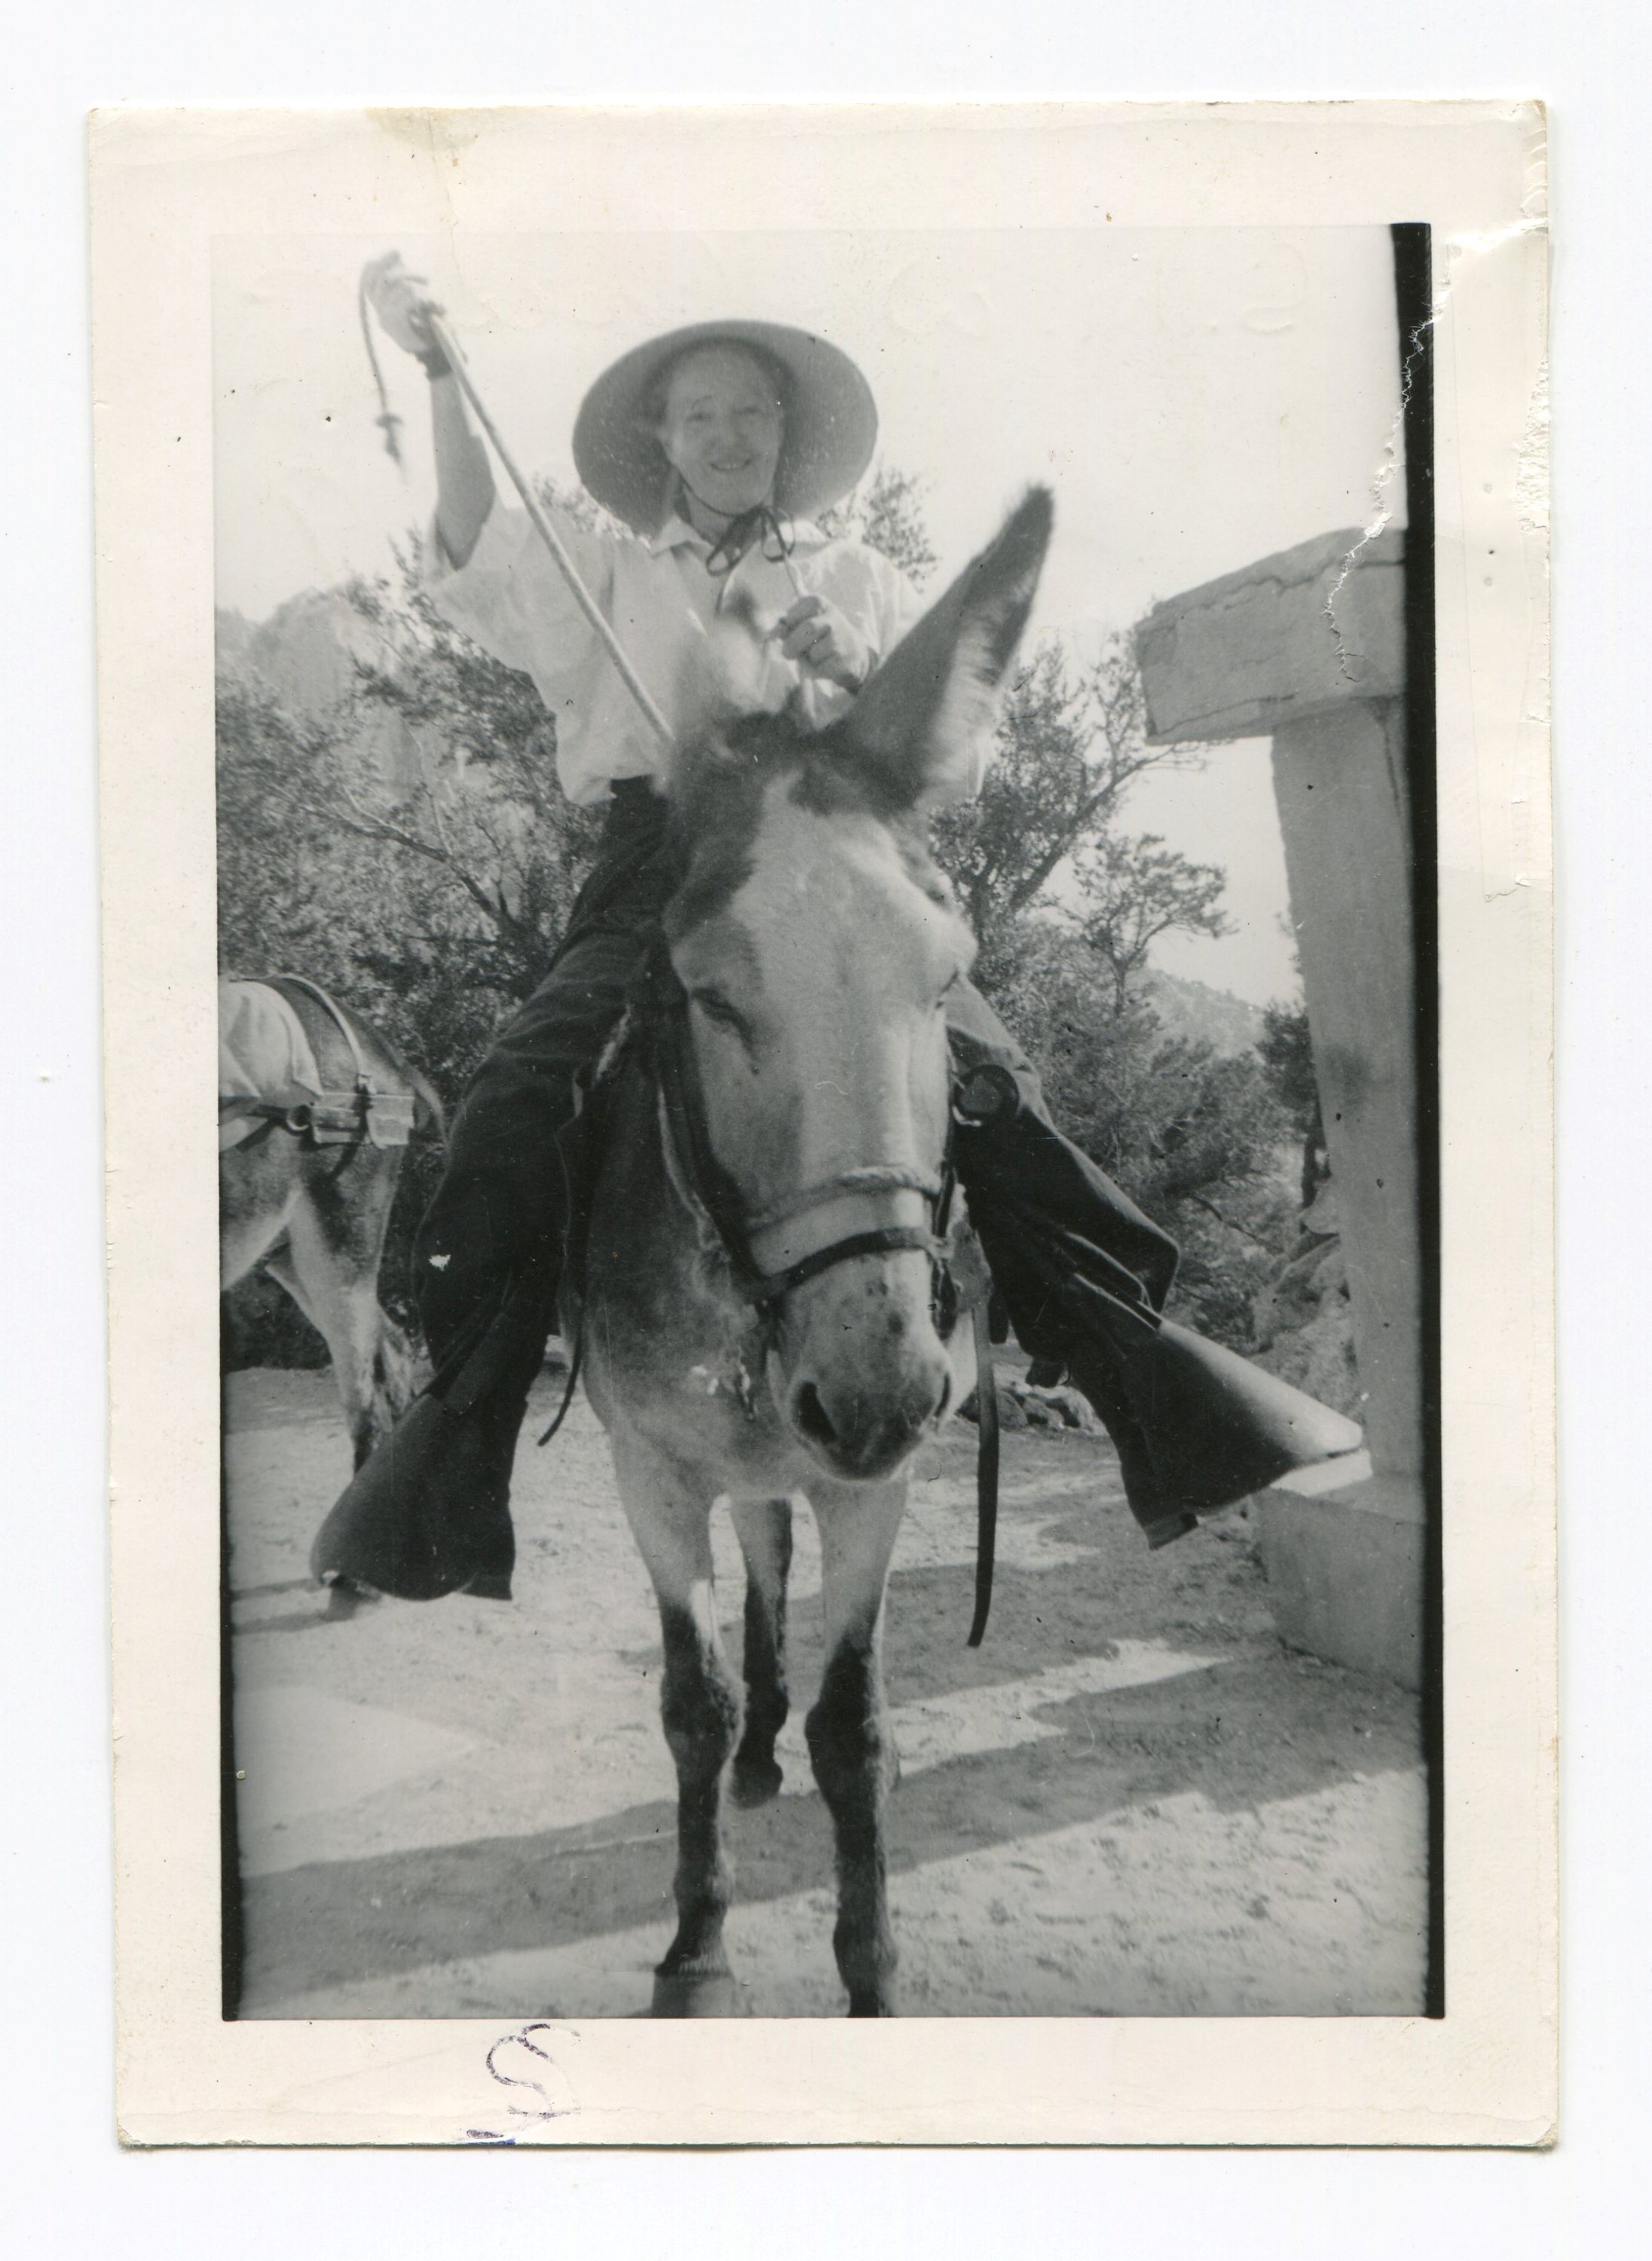 1939 Ashrama camp - Sherifa on donkey